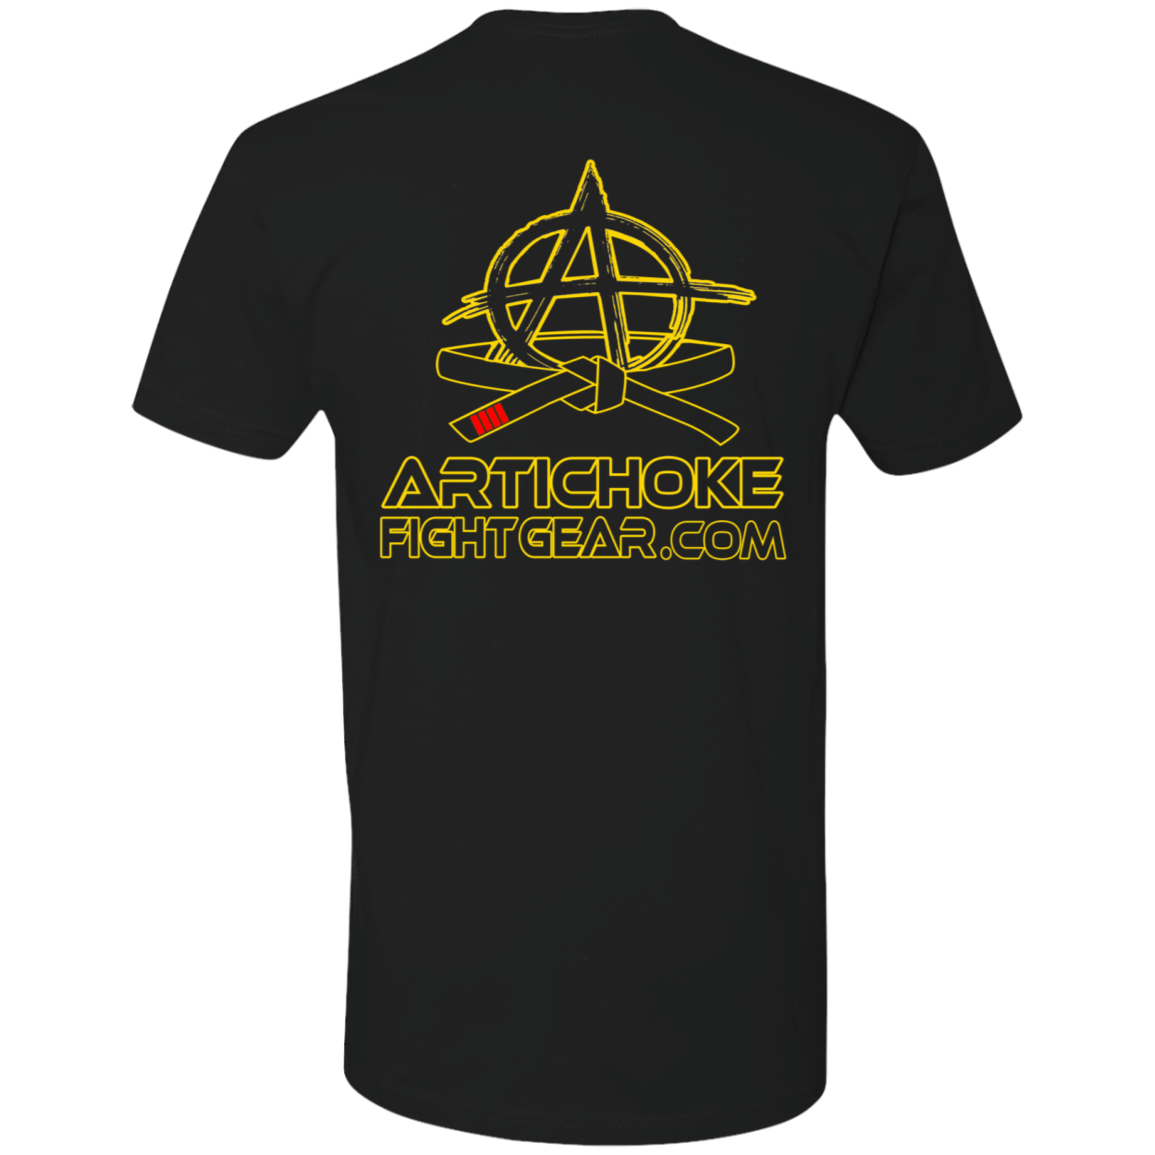 Artichoke Fight Gear Custom Design #20. You Don't Know the Power of Jiu Jitsu. Ultra Soft T-Shirt